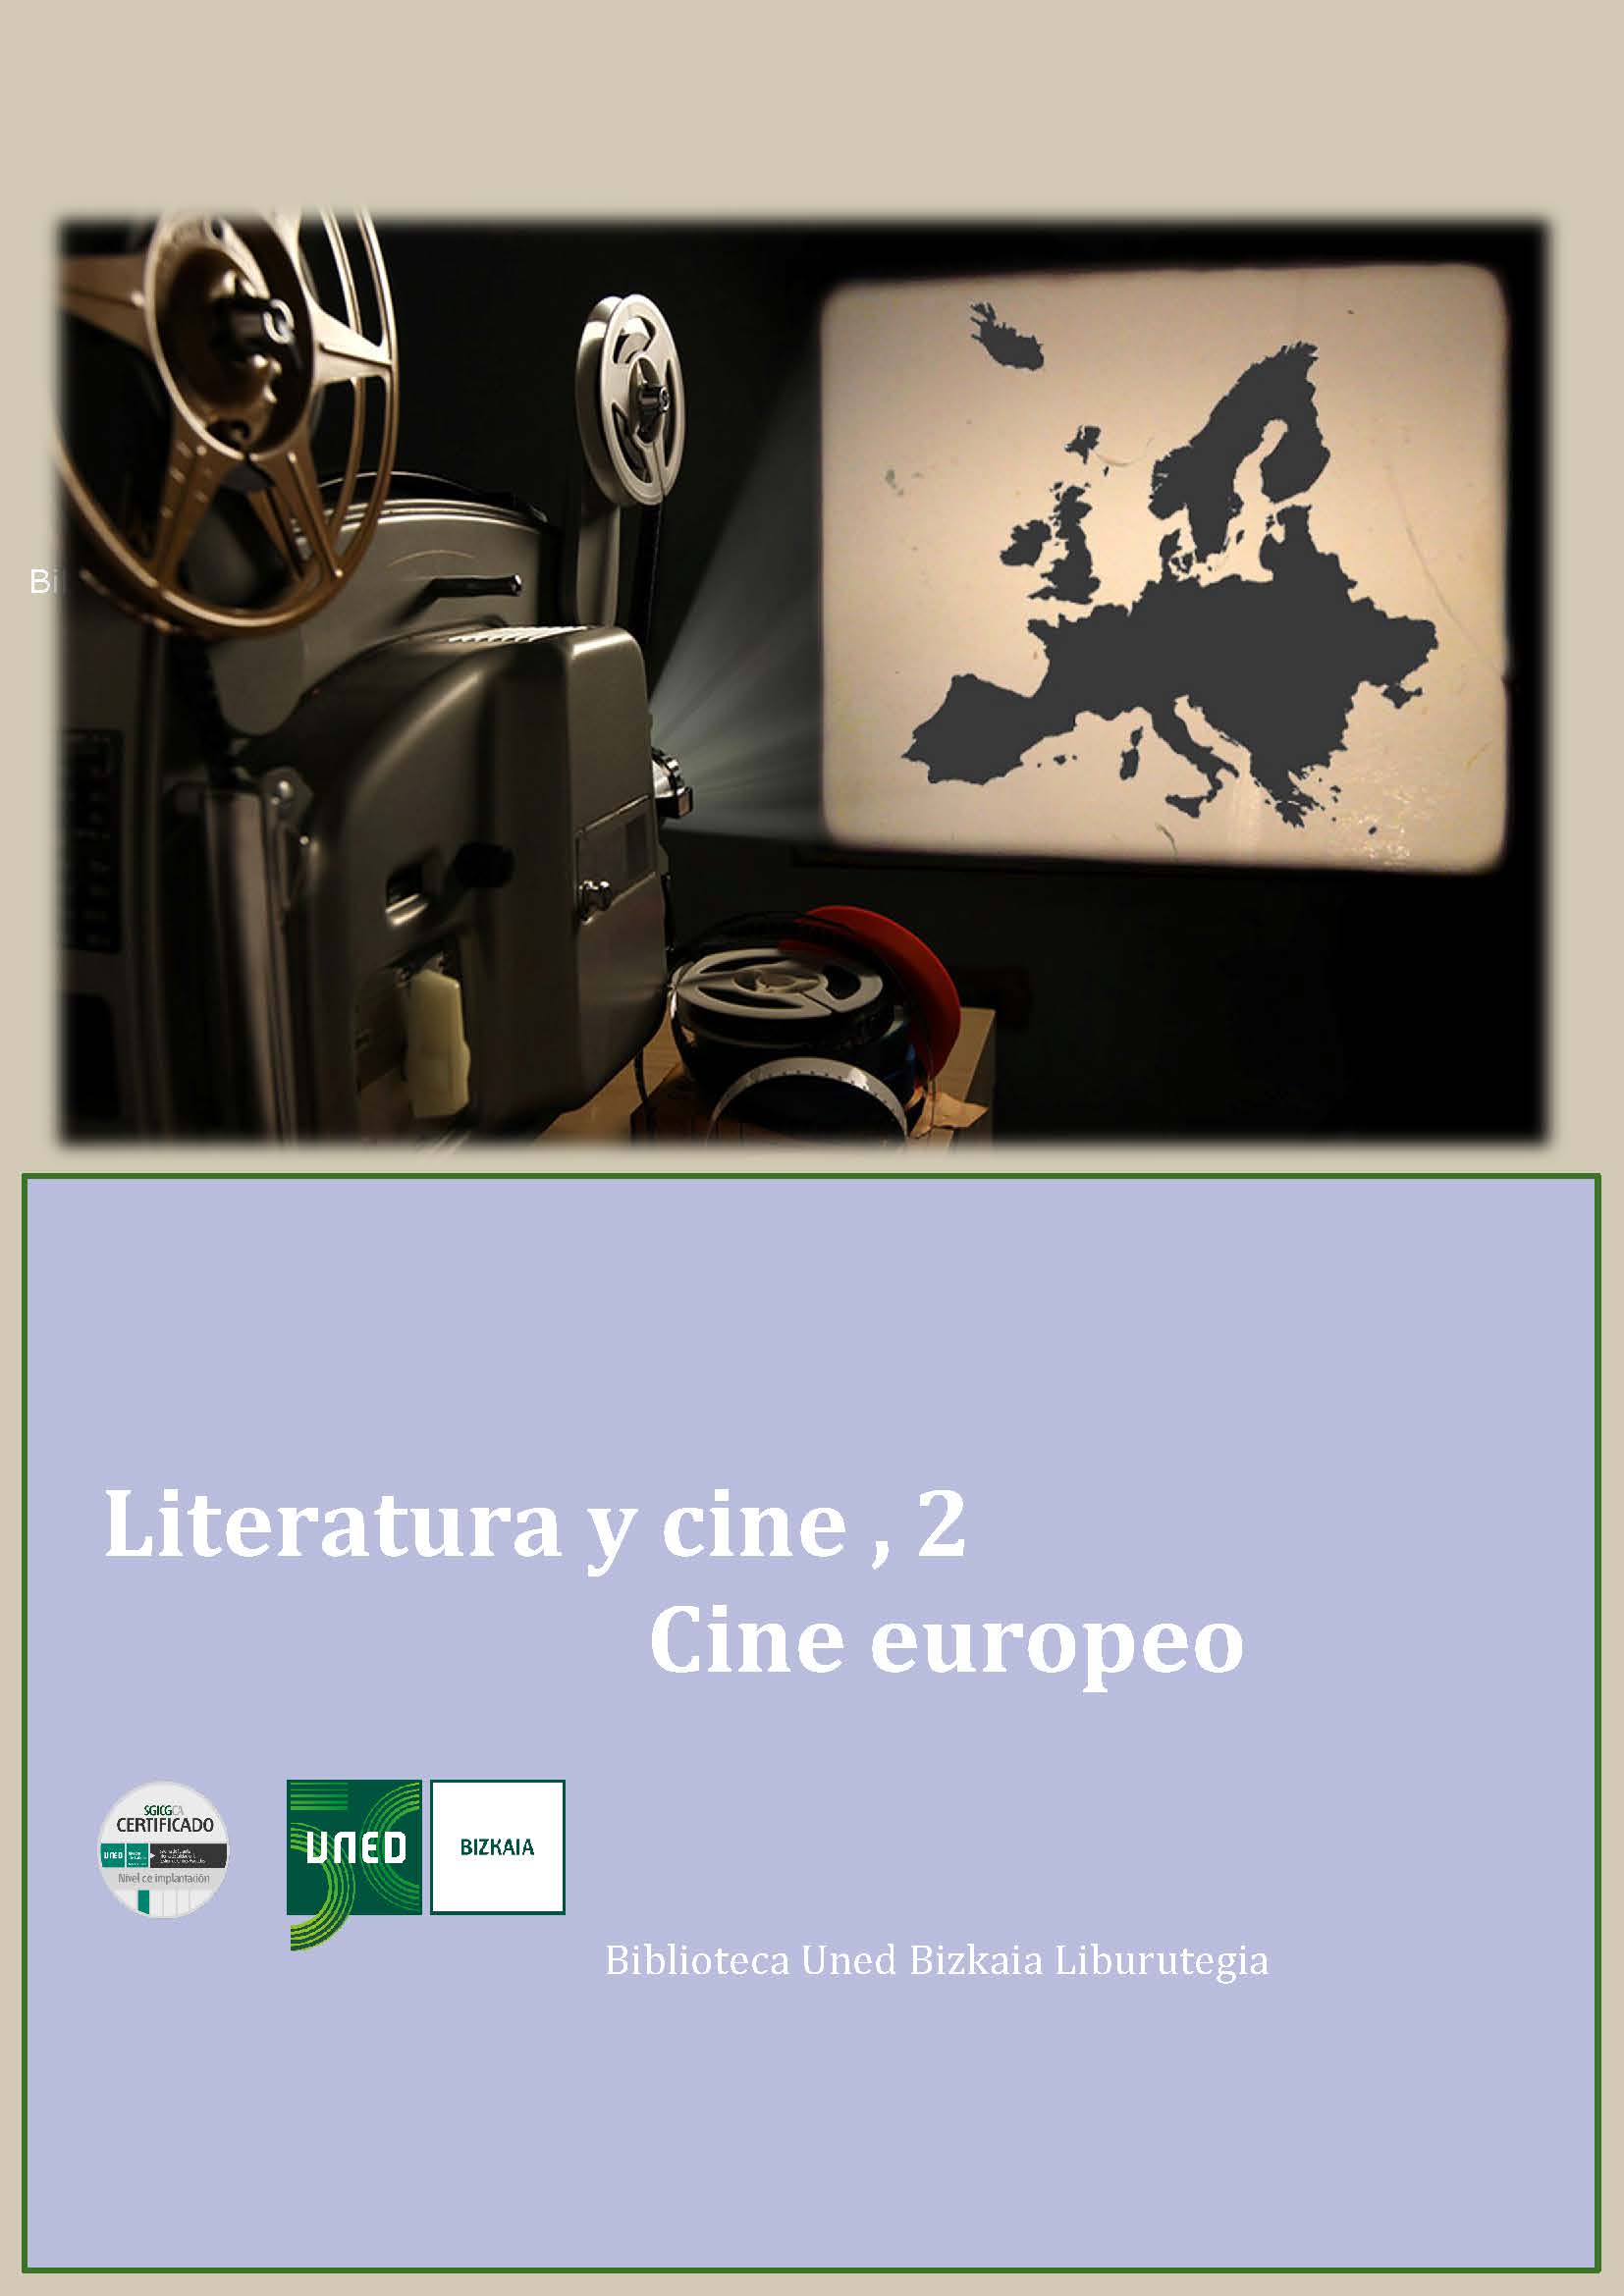 Cine y Literatura, 1. Cine eoropeo